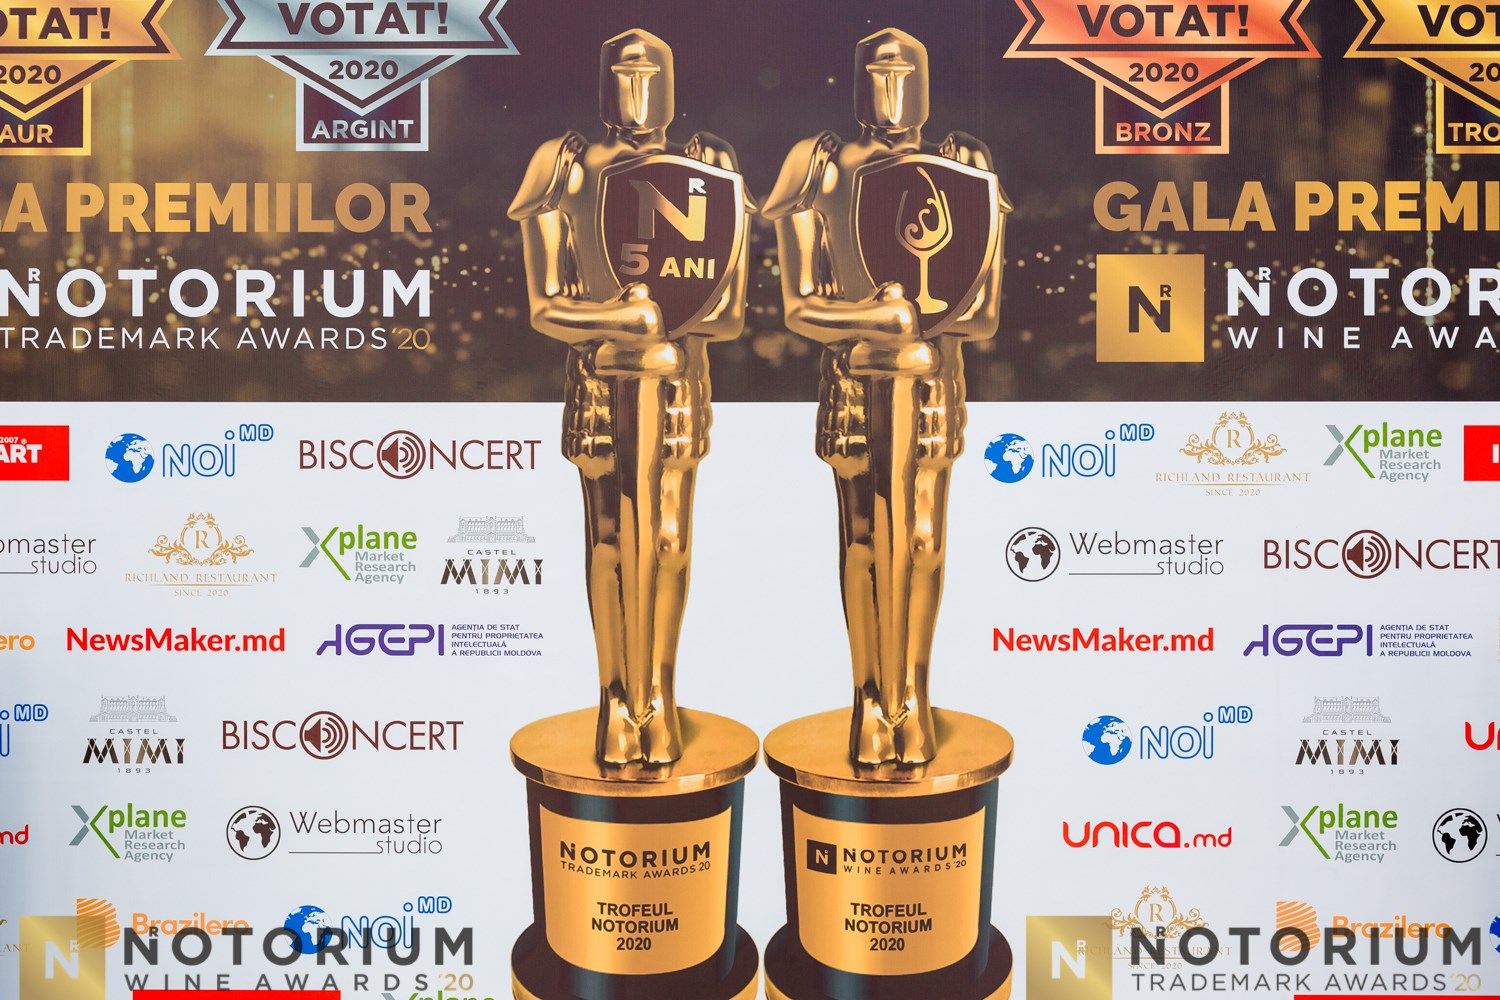 Cum a fost la ediția a 5-a a Galei premiilor NOTORIUM Trademark Awards și NOTORIUM Wine Awards 2020